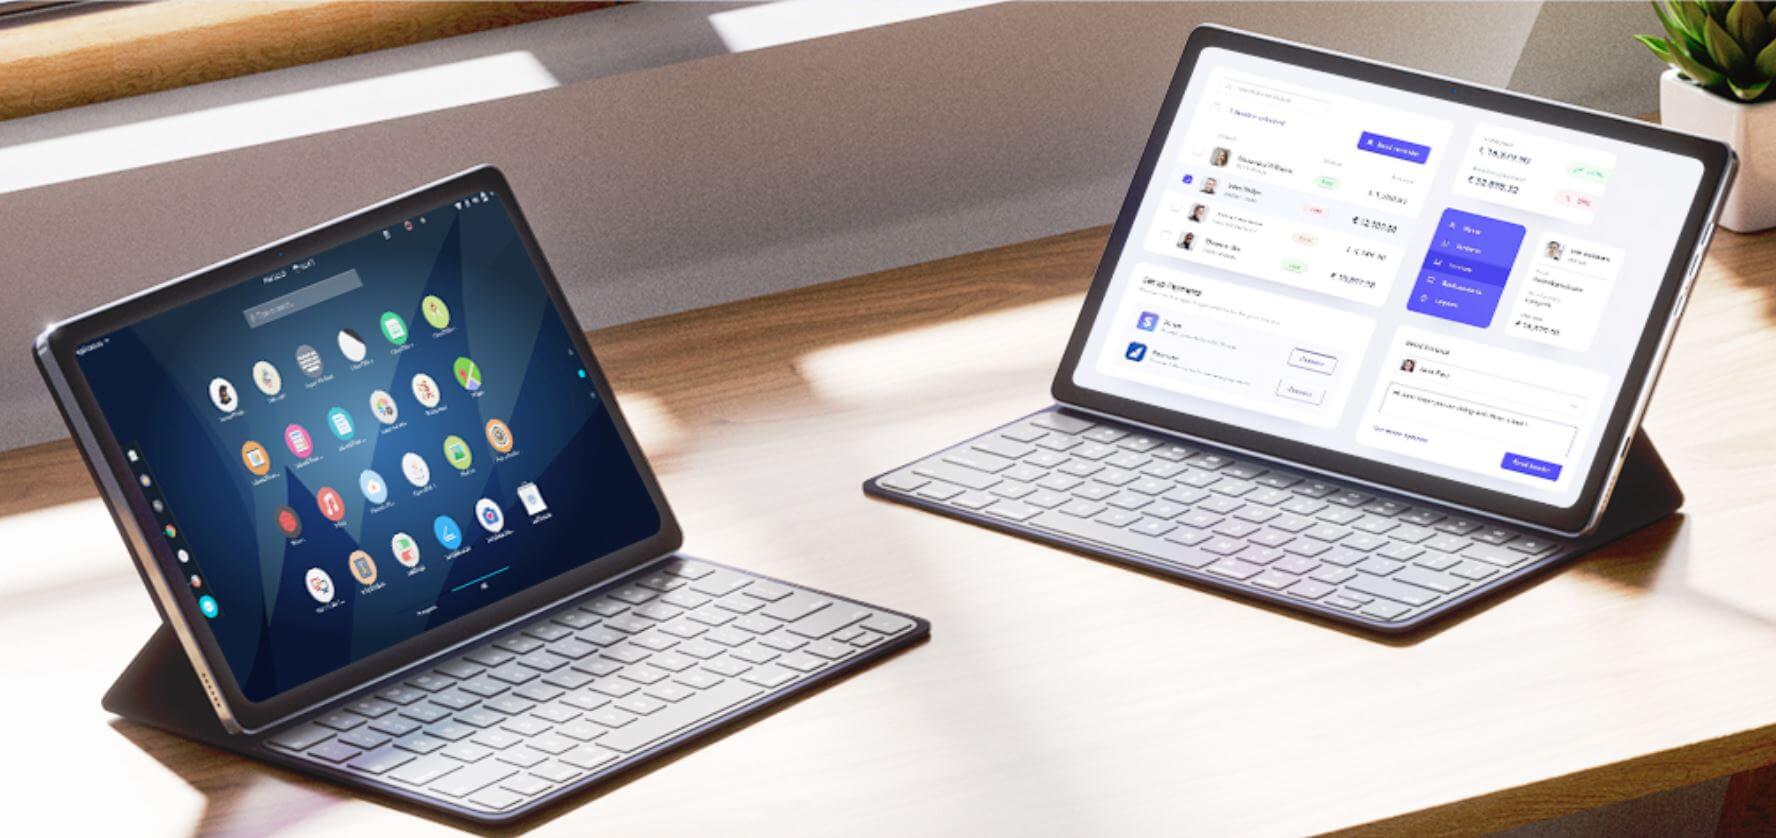 Этот планшет с клавиатурой дешевле ноутбука и круче Айпада. Забирай, пока сливают со скидкой